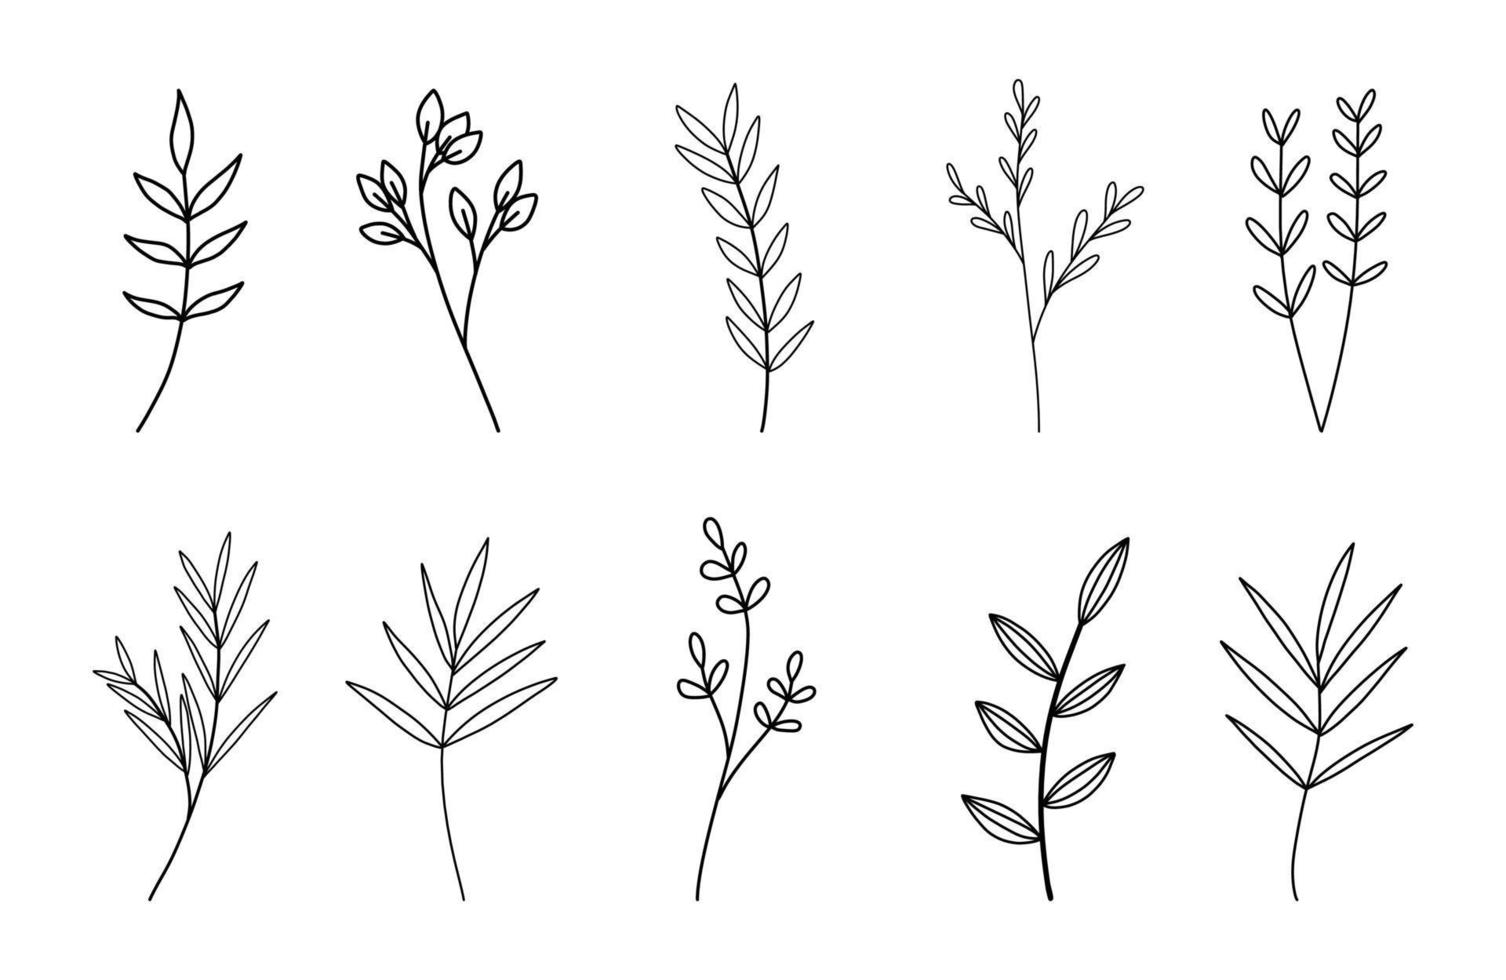 conjunto de vectores florales dibujados a mano. plantas dibujadas a mano en estilo garabato. ilustración botánica.